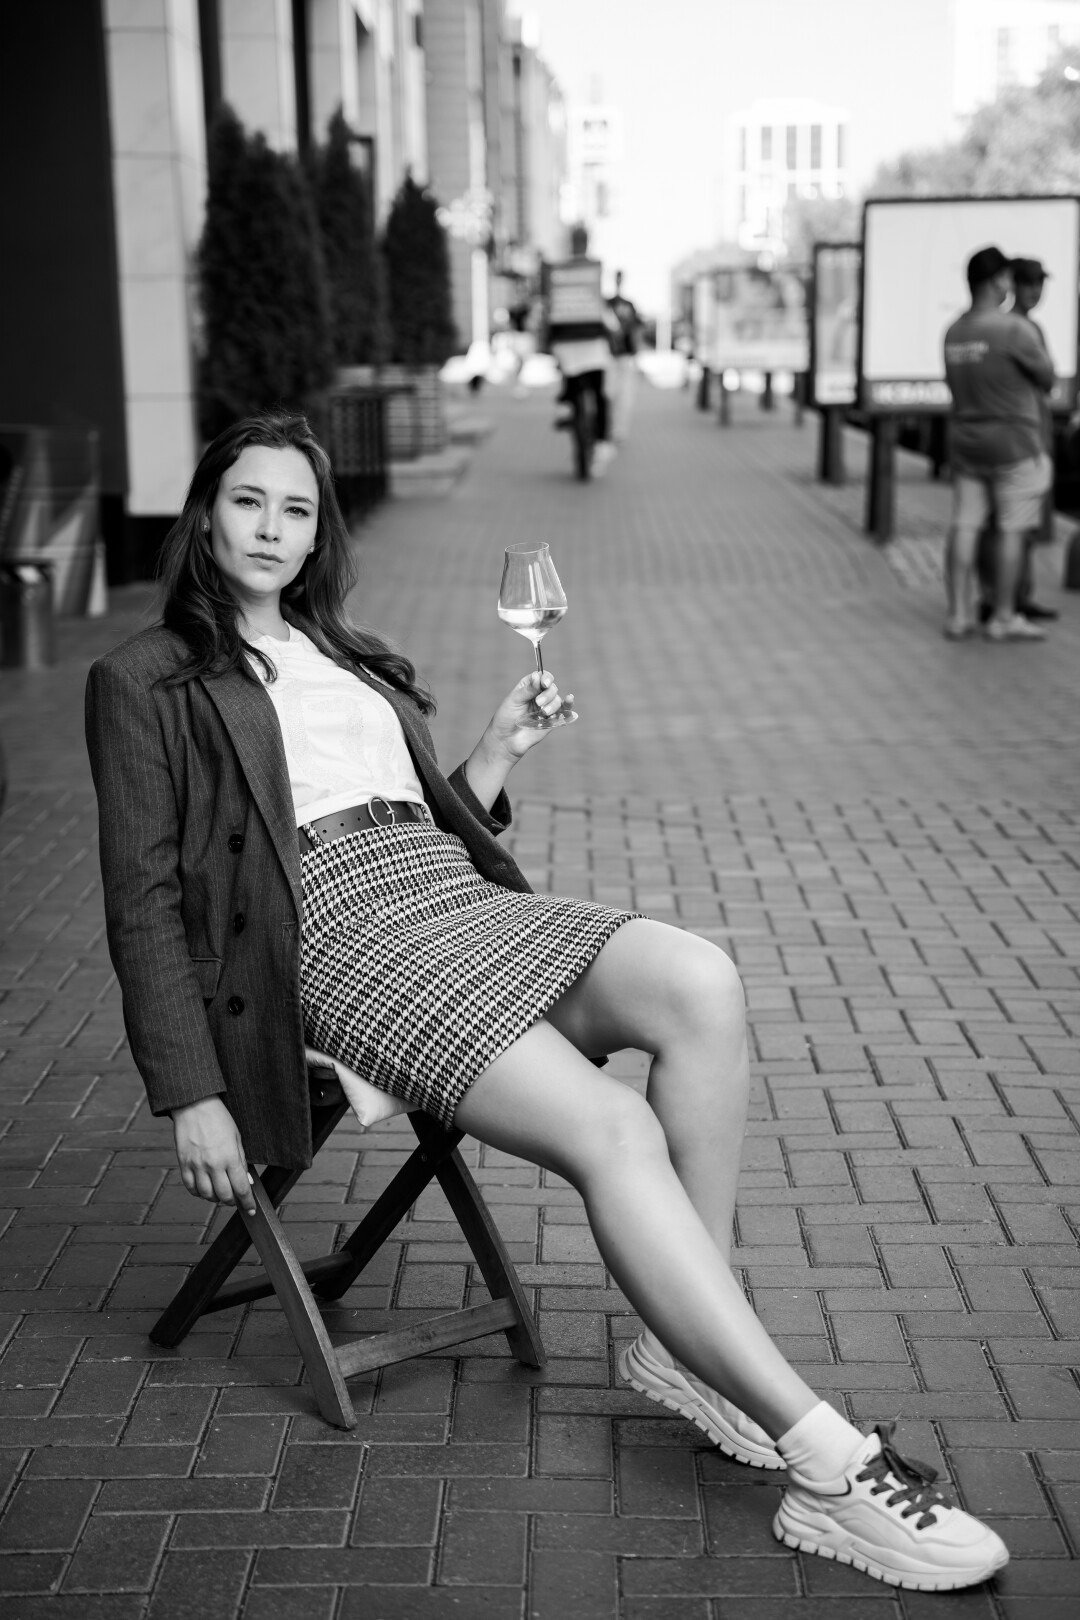 Сомелье Юлия Пантина: «В России давно уже научились делать прекрасные вина  по разумным ценам» | Sobaka.ru